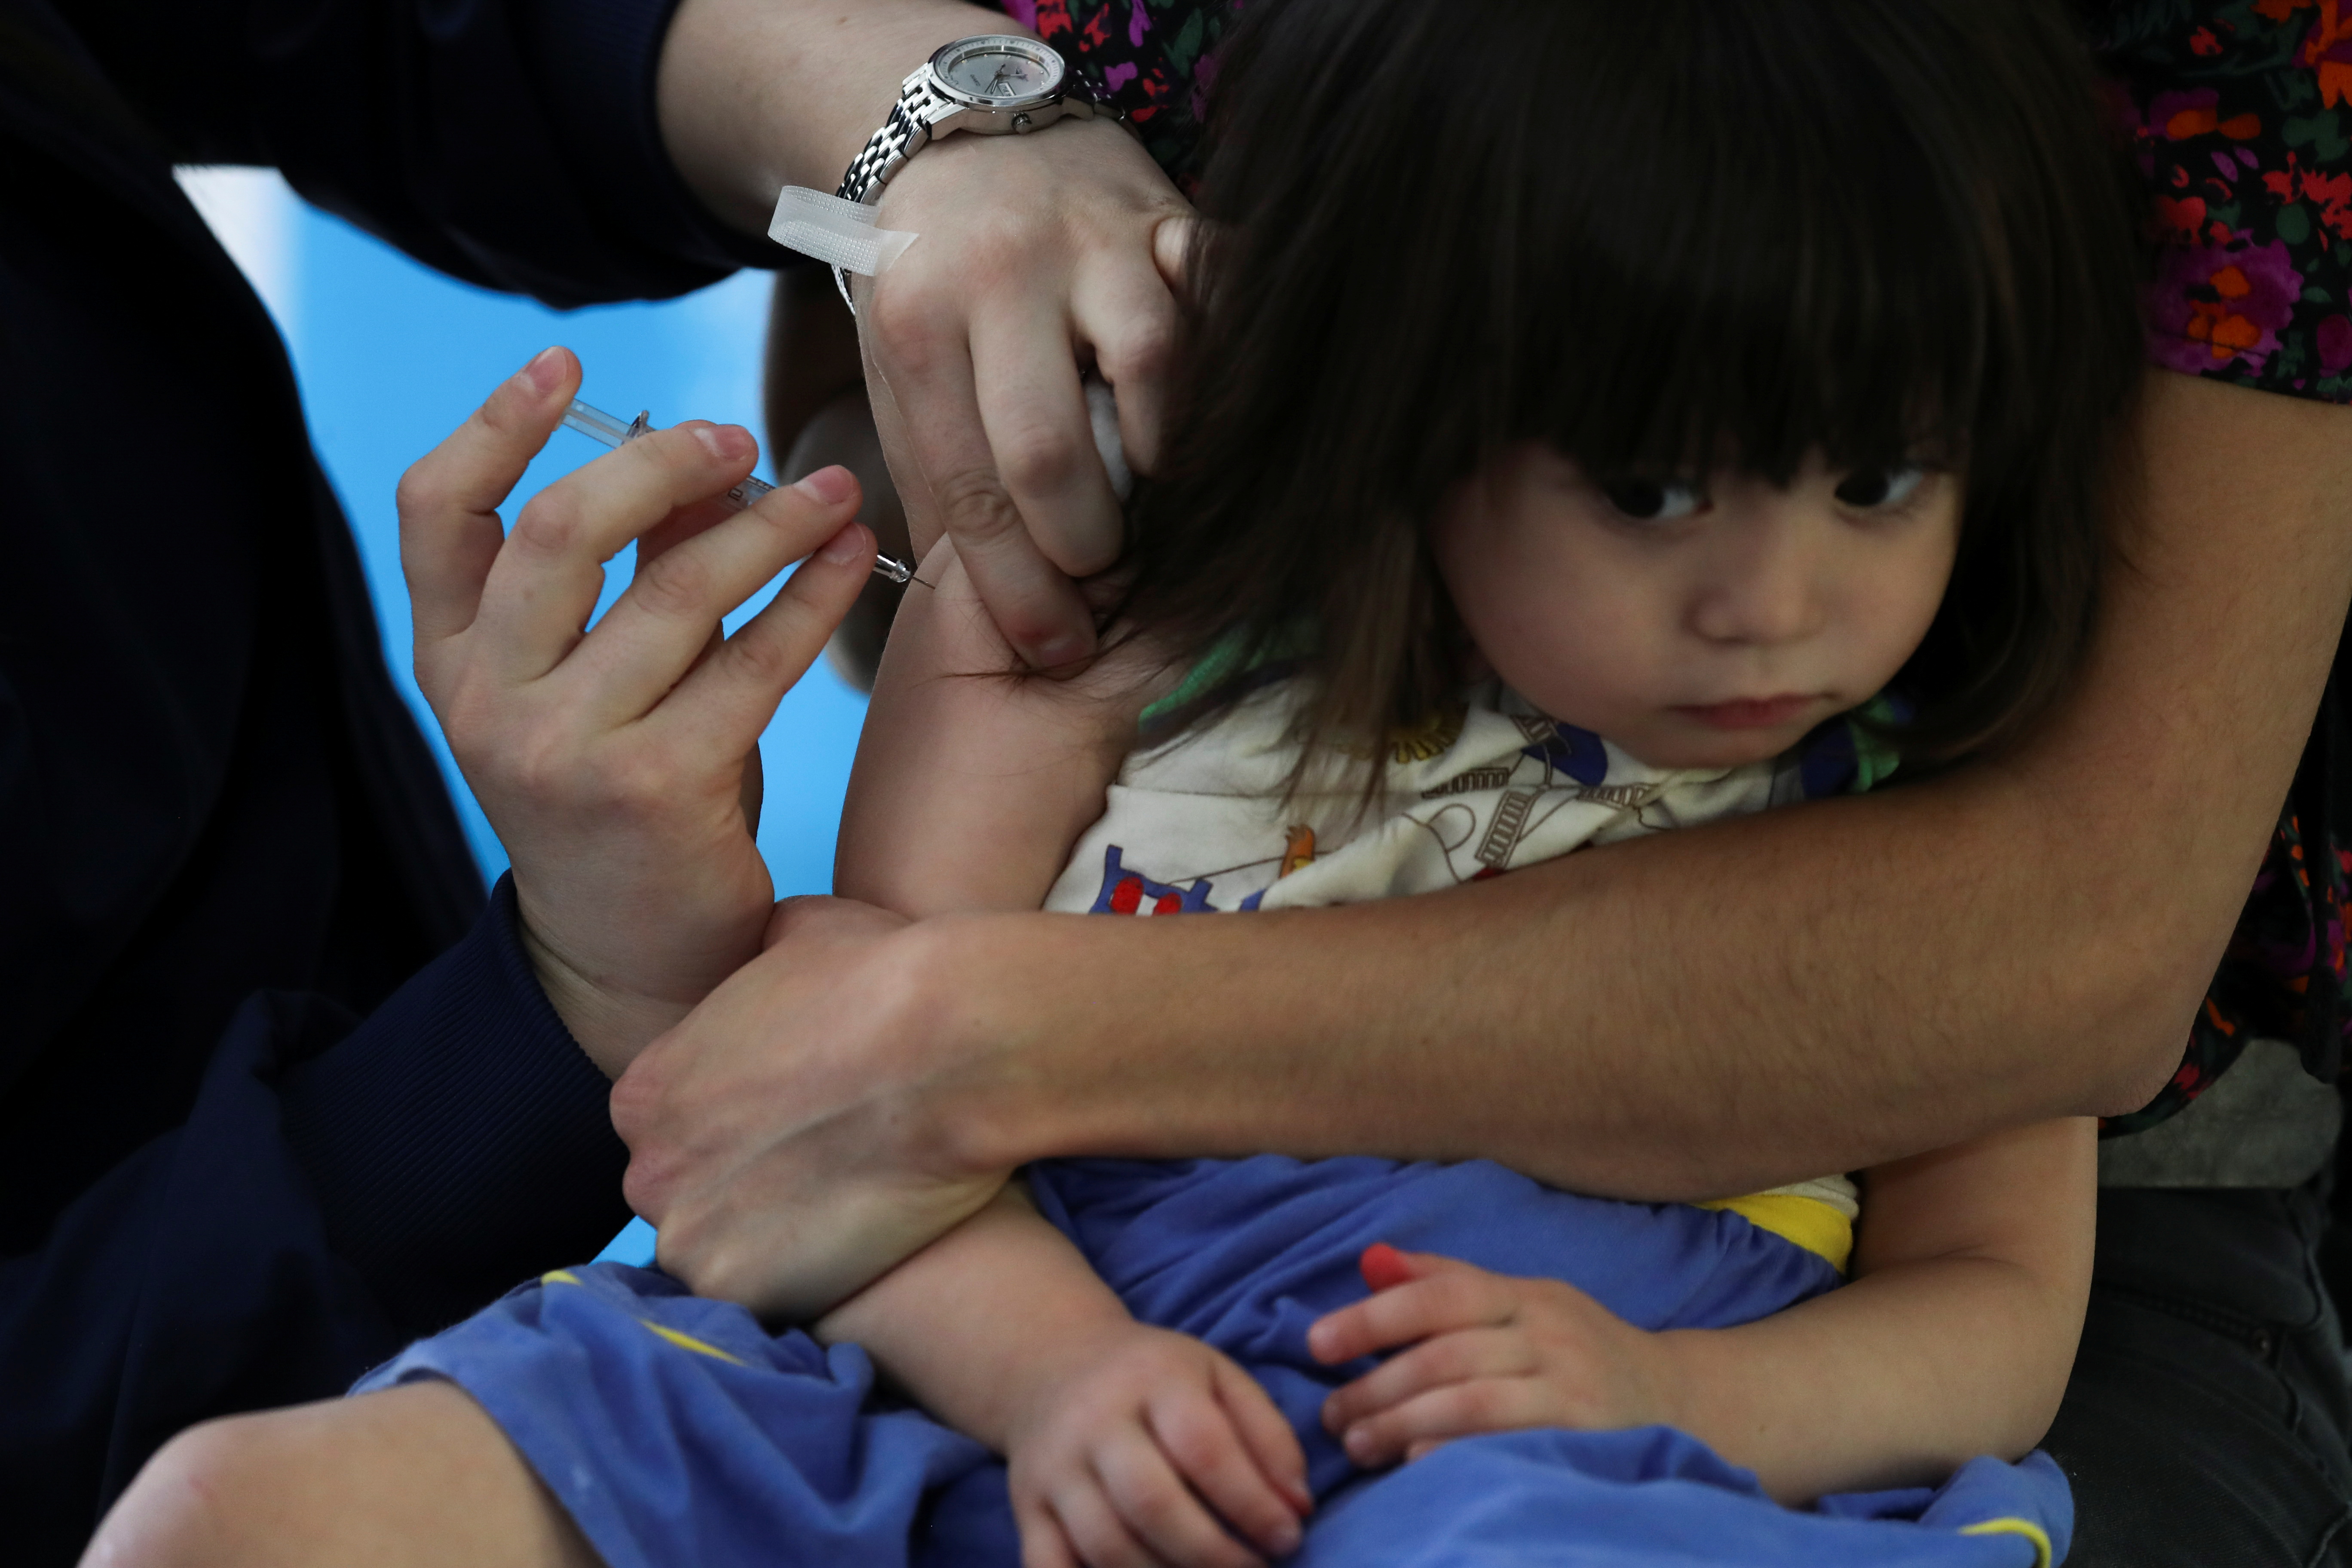 Al reasignarse numerosos recursos y una gran parte del personal para apoyar la respuesta a la COVID-19, se han producido importantes interrupciones en la prestación de servicios de inmunización en muchas partes del mundo REUTERS/Ivan Alvarado